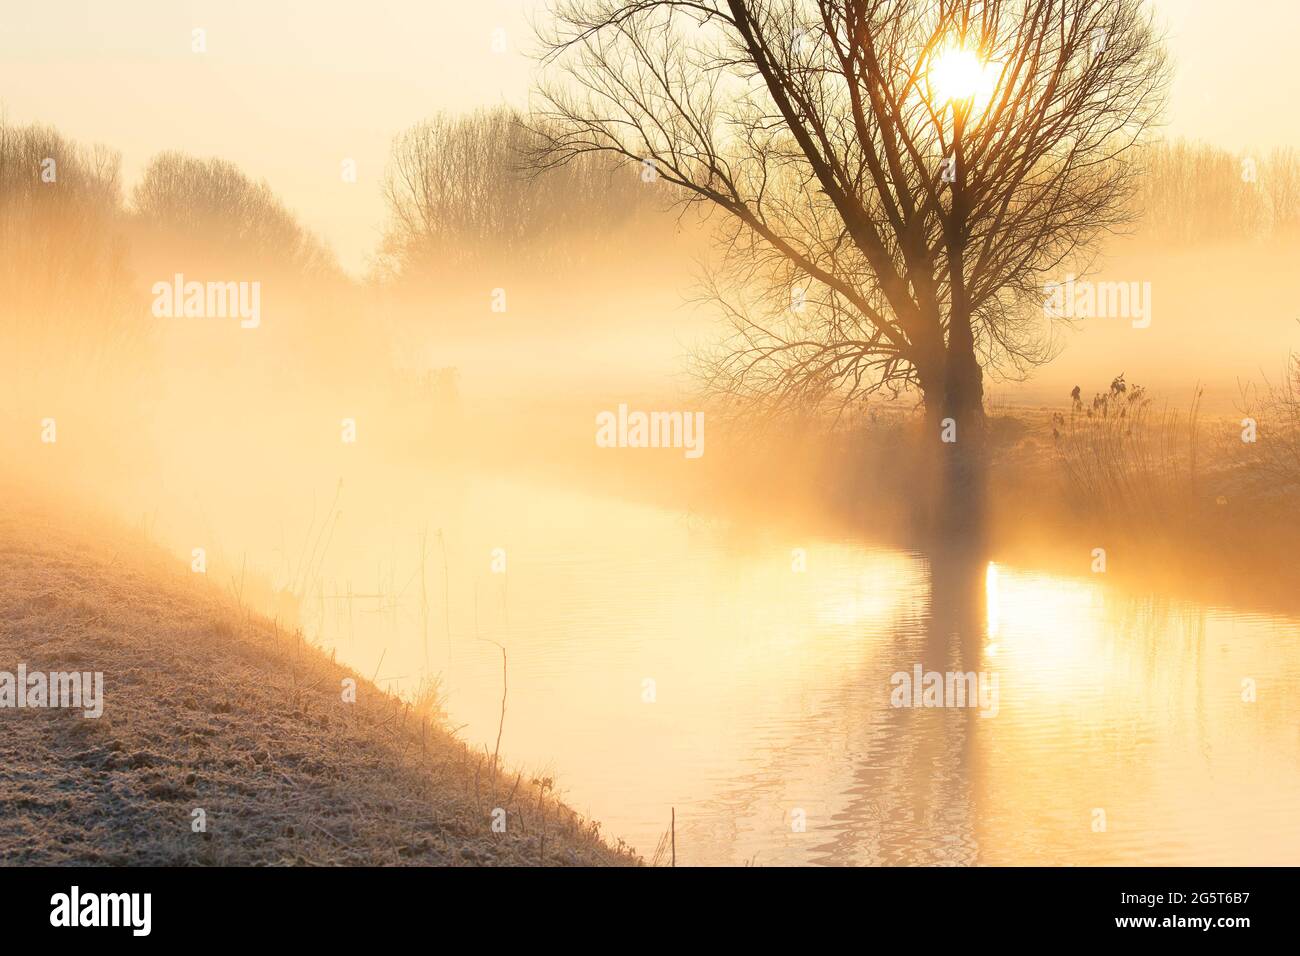 morning in de Drie Mussen nature area, Belgium, West Flanders, De Drie Mussen, Diksmuide Stock Photo